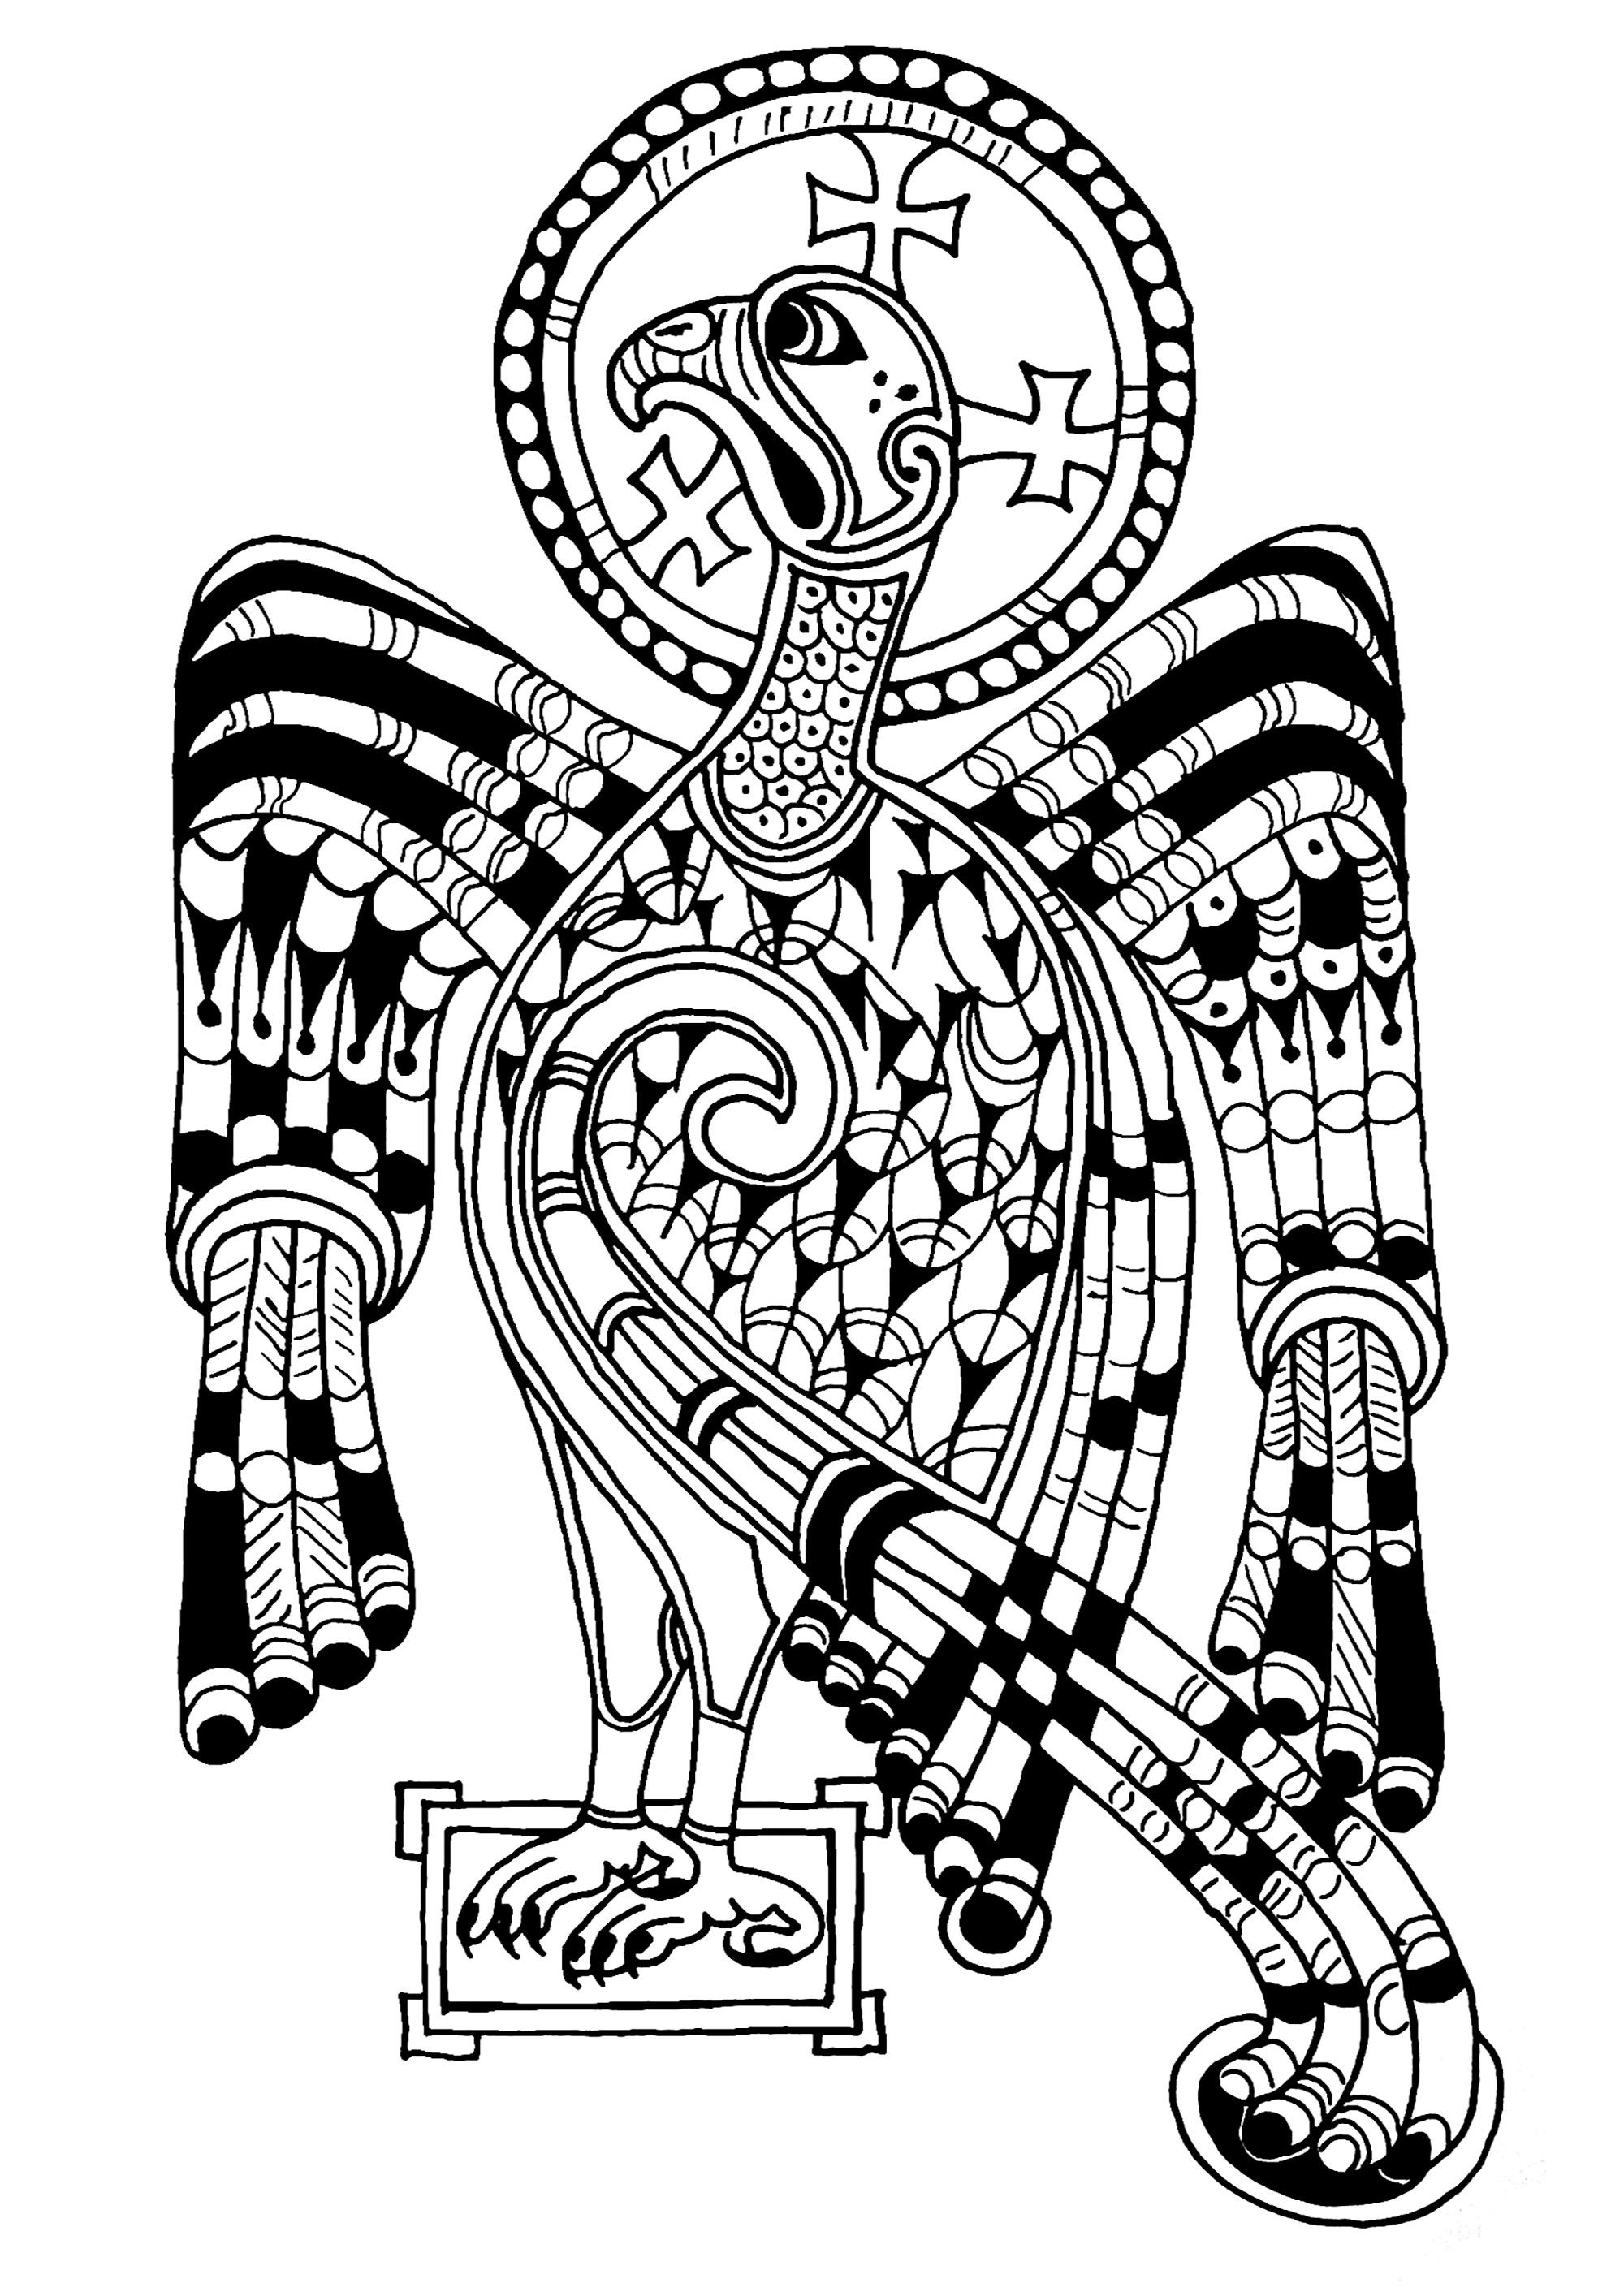 Der im Book of Kells abgebildete Adler symbolisiert den Heiligen Johannes und die Himmelfahrt Jesu. Das Book of Kells ist ein mittelalterliches Manuskript aus dem 9. Jahrhundert, von dem noch 680 Seiten erhalten sind. Es enthält die vier lateinischen Evangelien des Neuen Testaments. Es ist in der Bibliothek des Trinity College in Dublin ausgestellt.